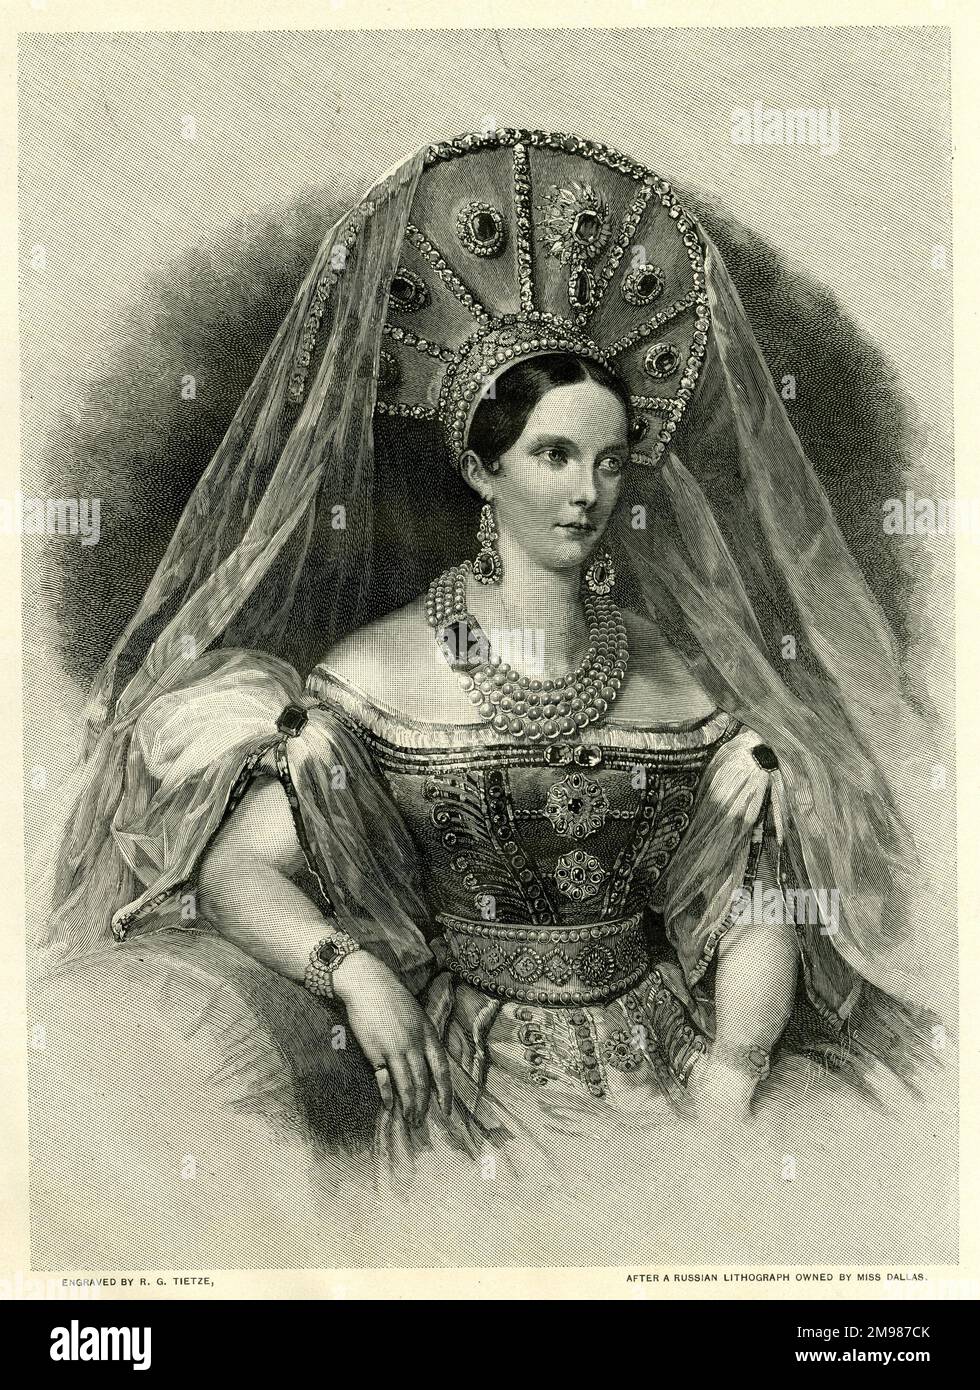 Kaiserin Alexandra Feodorowna, vormals Prinzessin Charlotte von Preußen (1798-1860), Ehefrau von Zar Nicholas I. aus Russland. Stockfoto